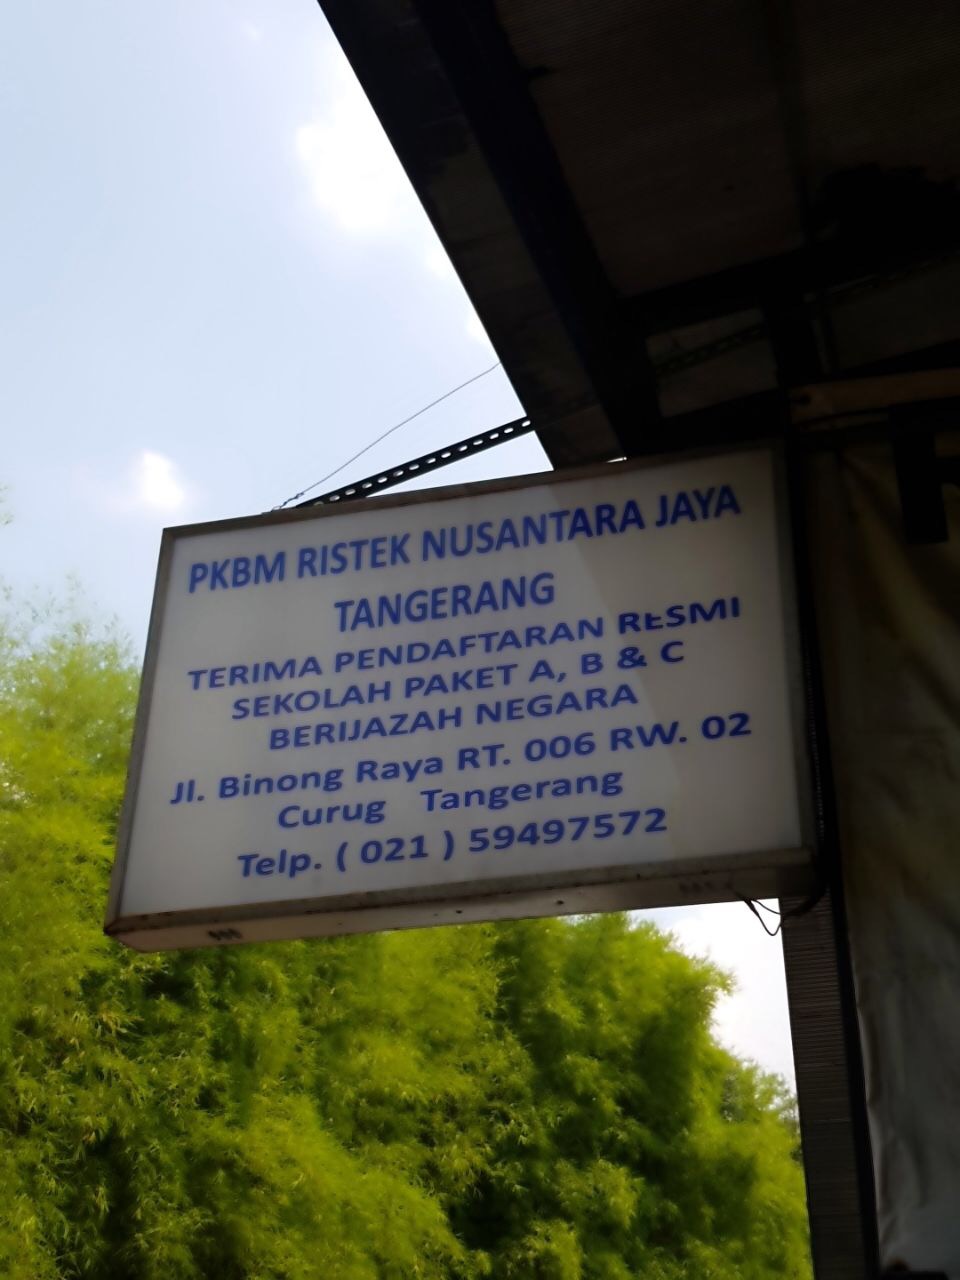 PKBM Ristek Nusantara Jaya Tangerang